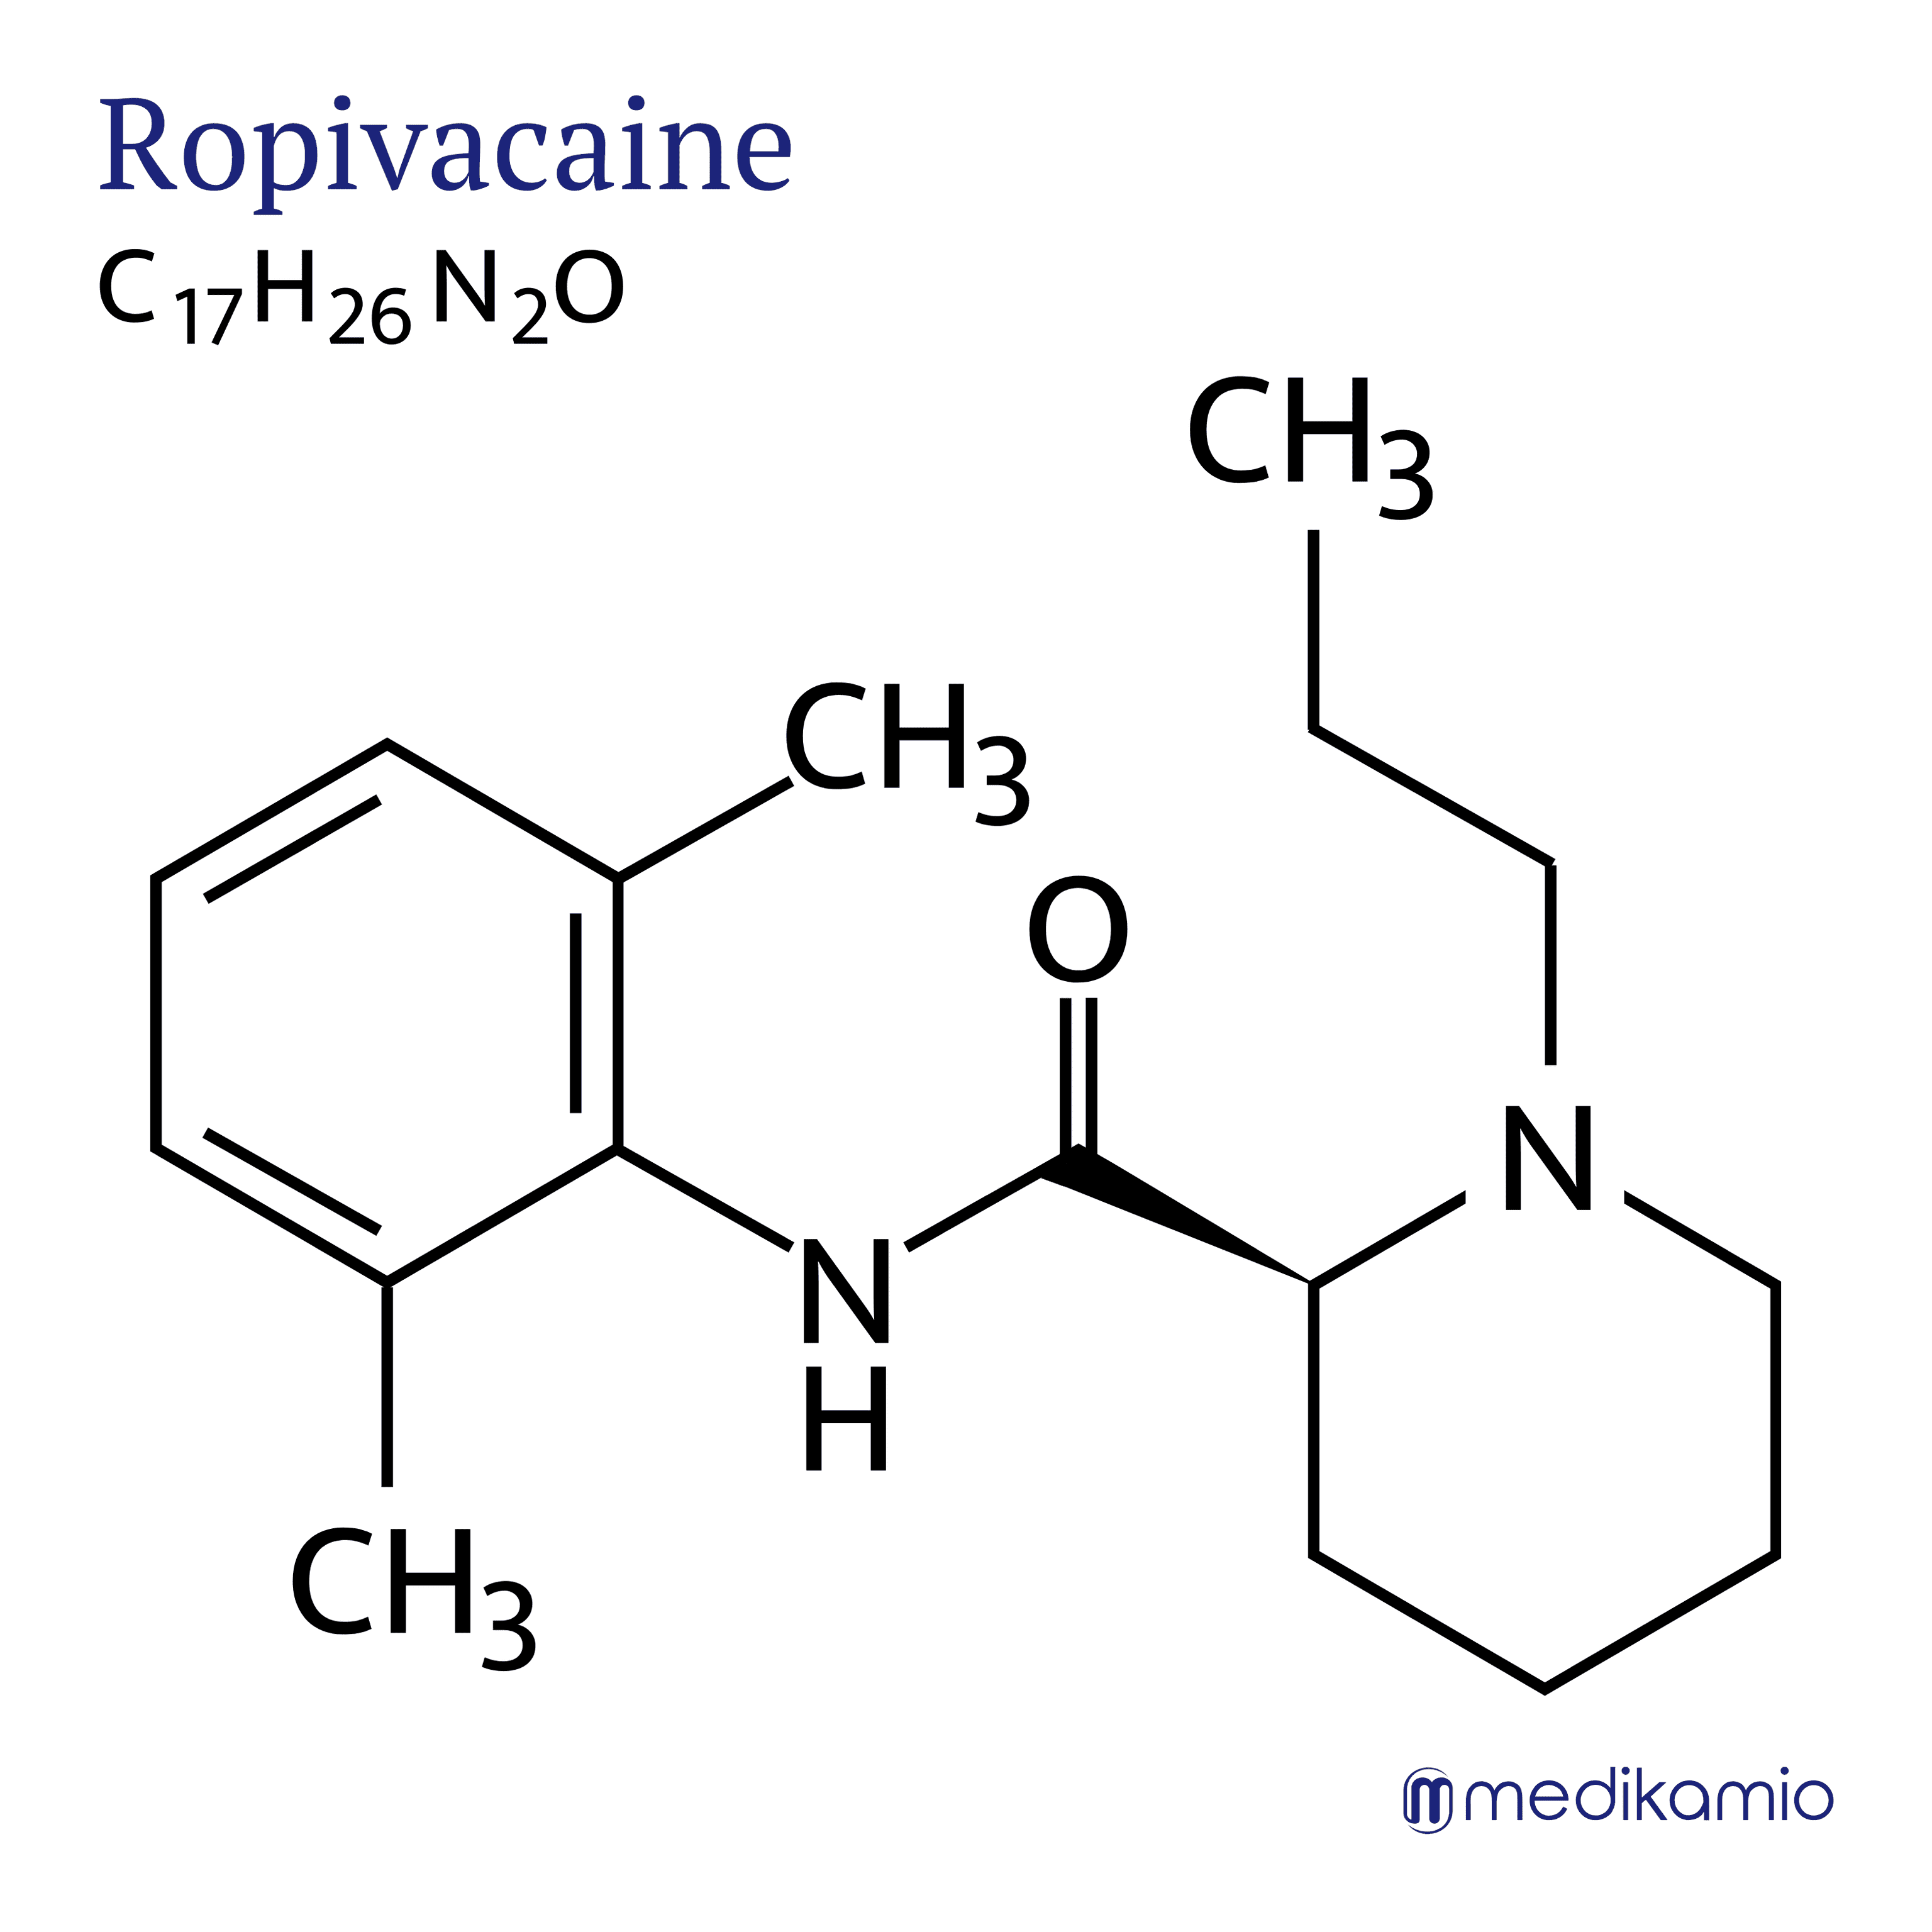 Grafische structuurformule van de werkzame stof ropivcaïne